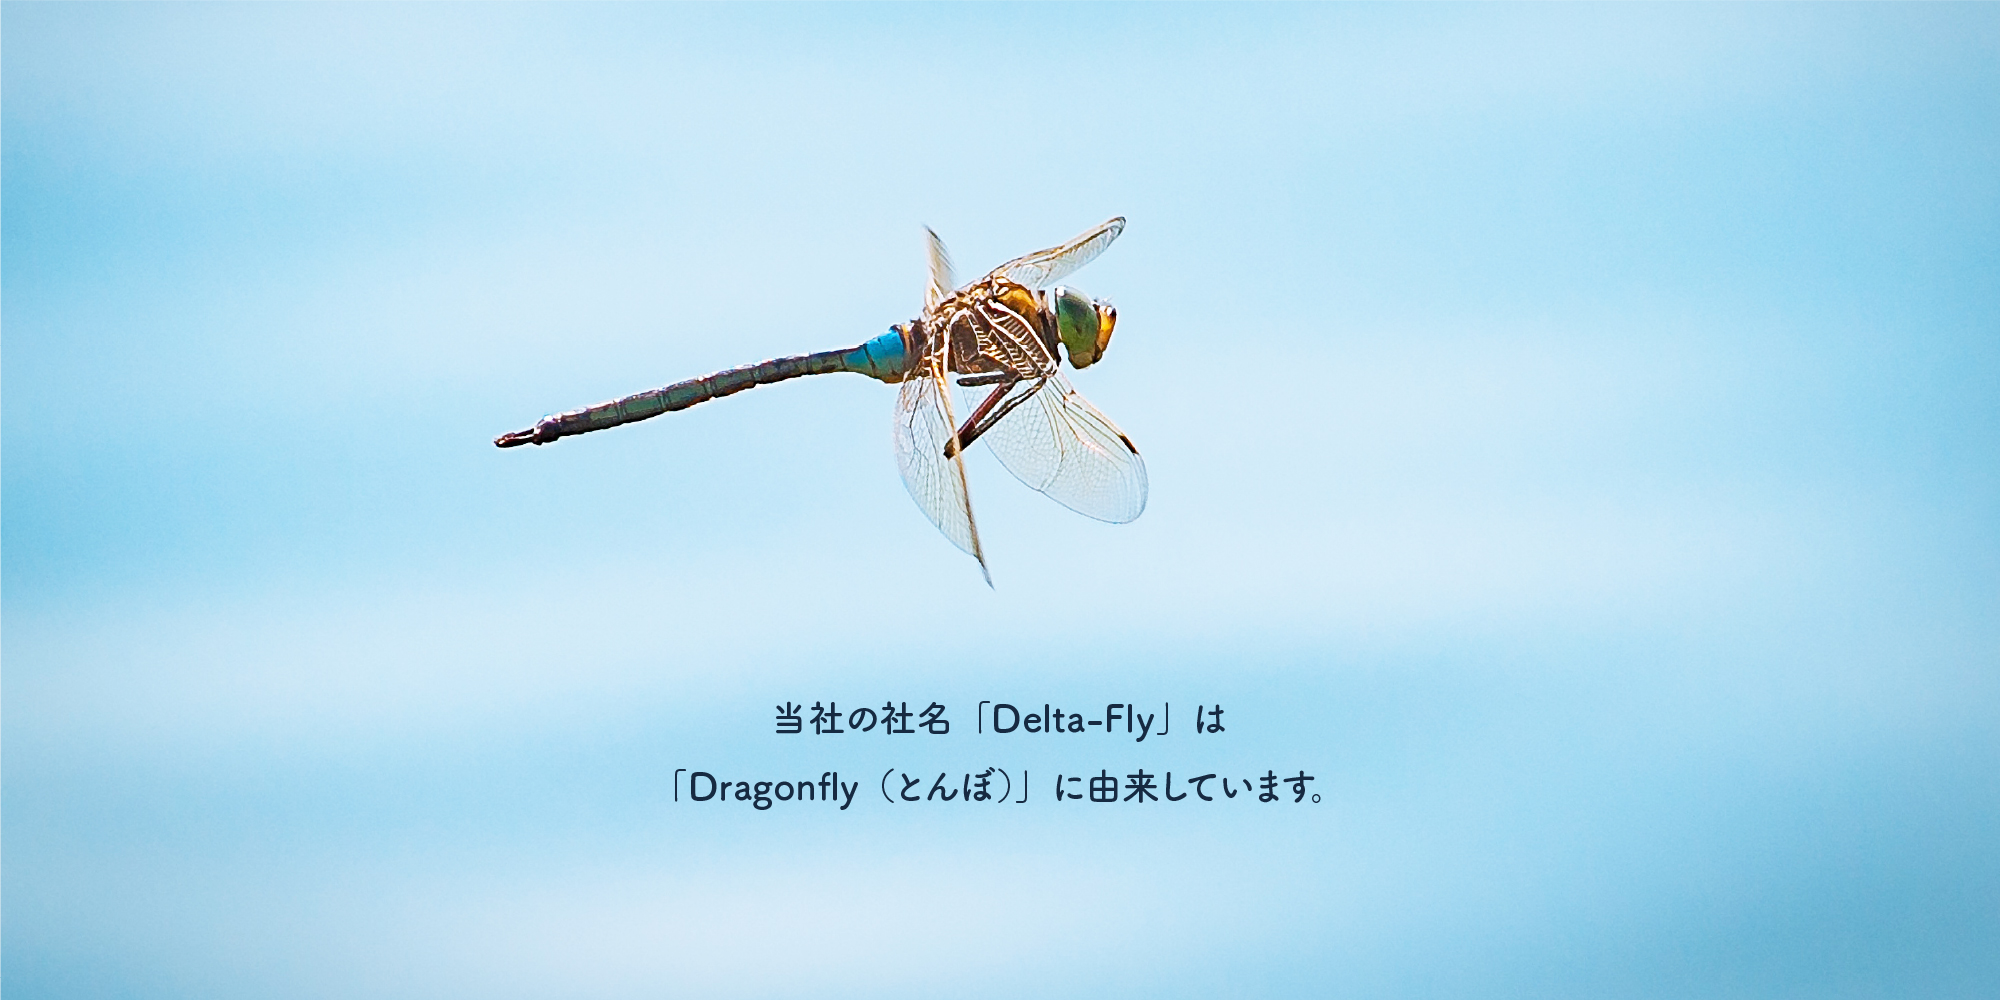 当社の社名「Delta-Fly」は「Dragonfly（とんぼ）」に由来しています。